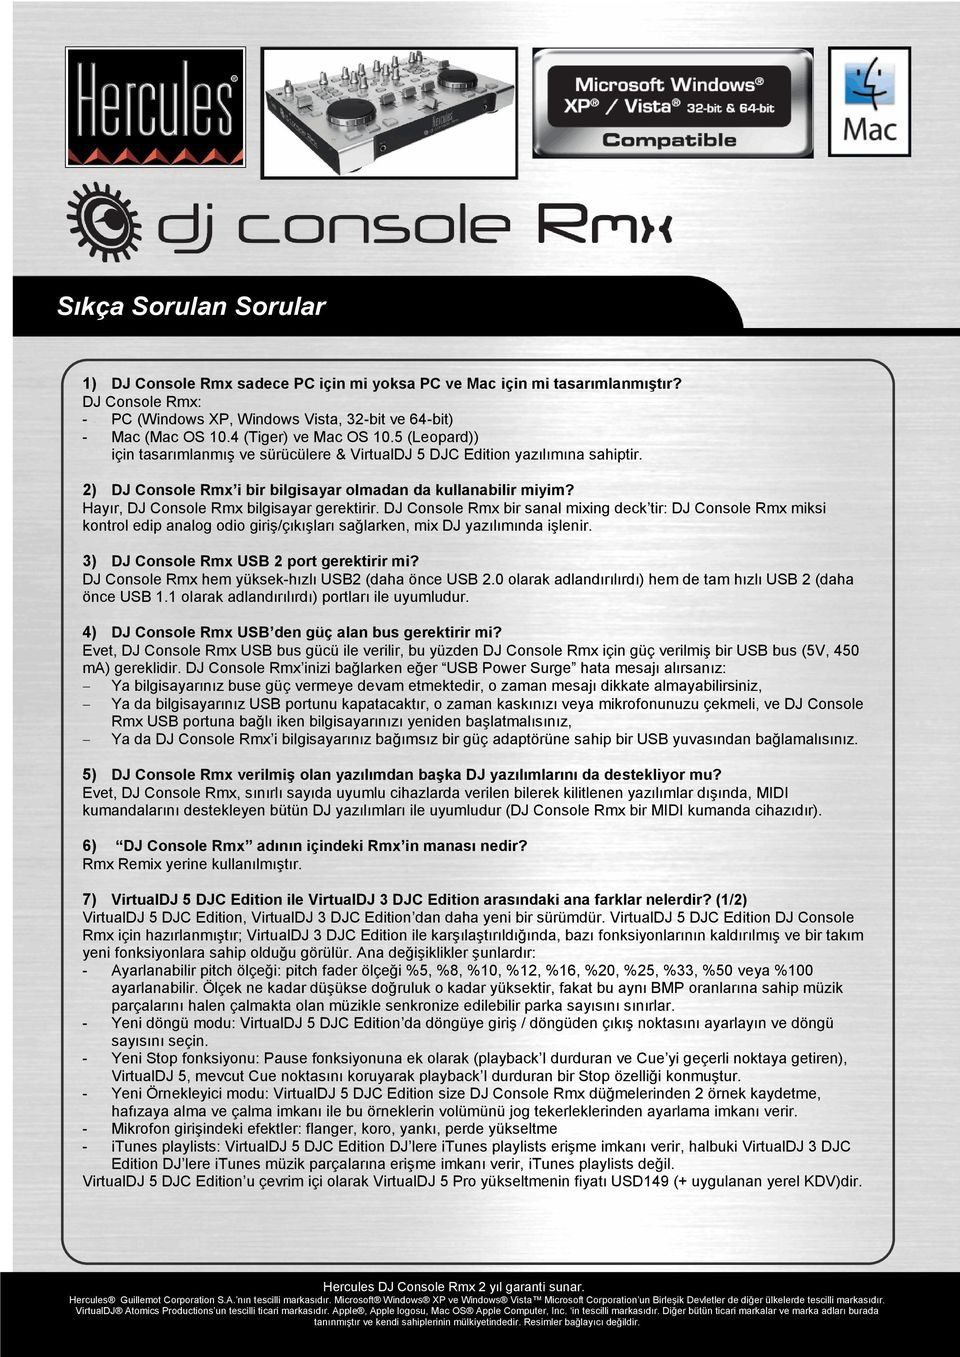 Hayır, DJ Console Rmx bilgisayar gerektirir. DJ Console Rmx bir sanal mixing deck tir: DJ Console Rmx miksi kontrol edip analog odio giriş/çıkışları sağlarken, mix DJ yazılımında işlenir.